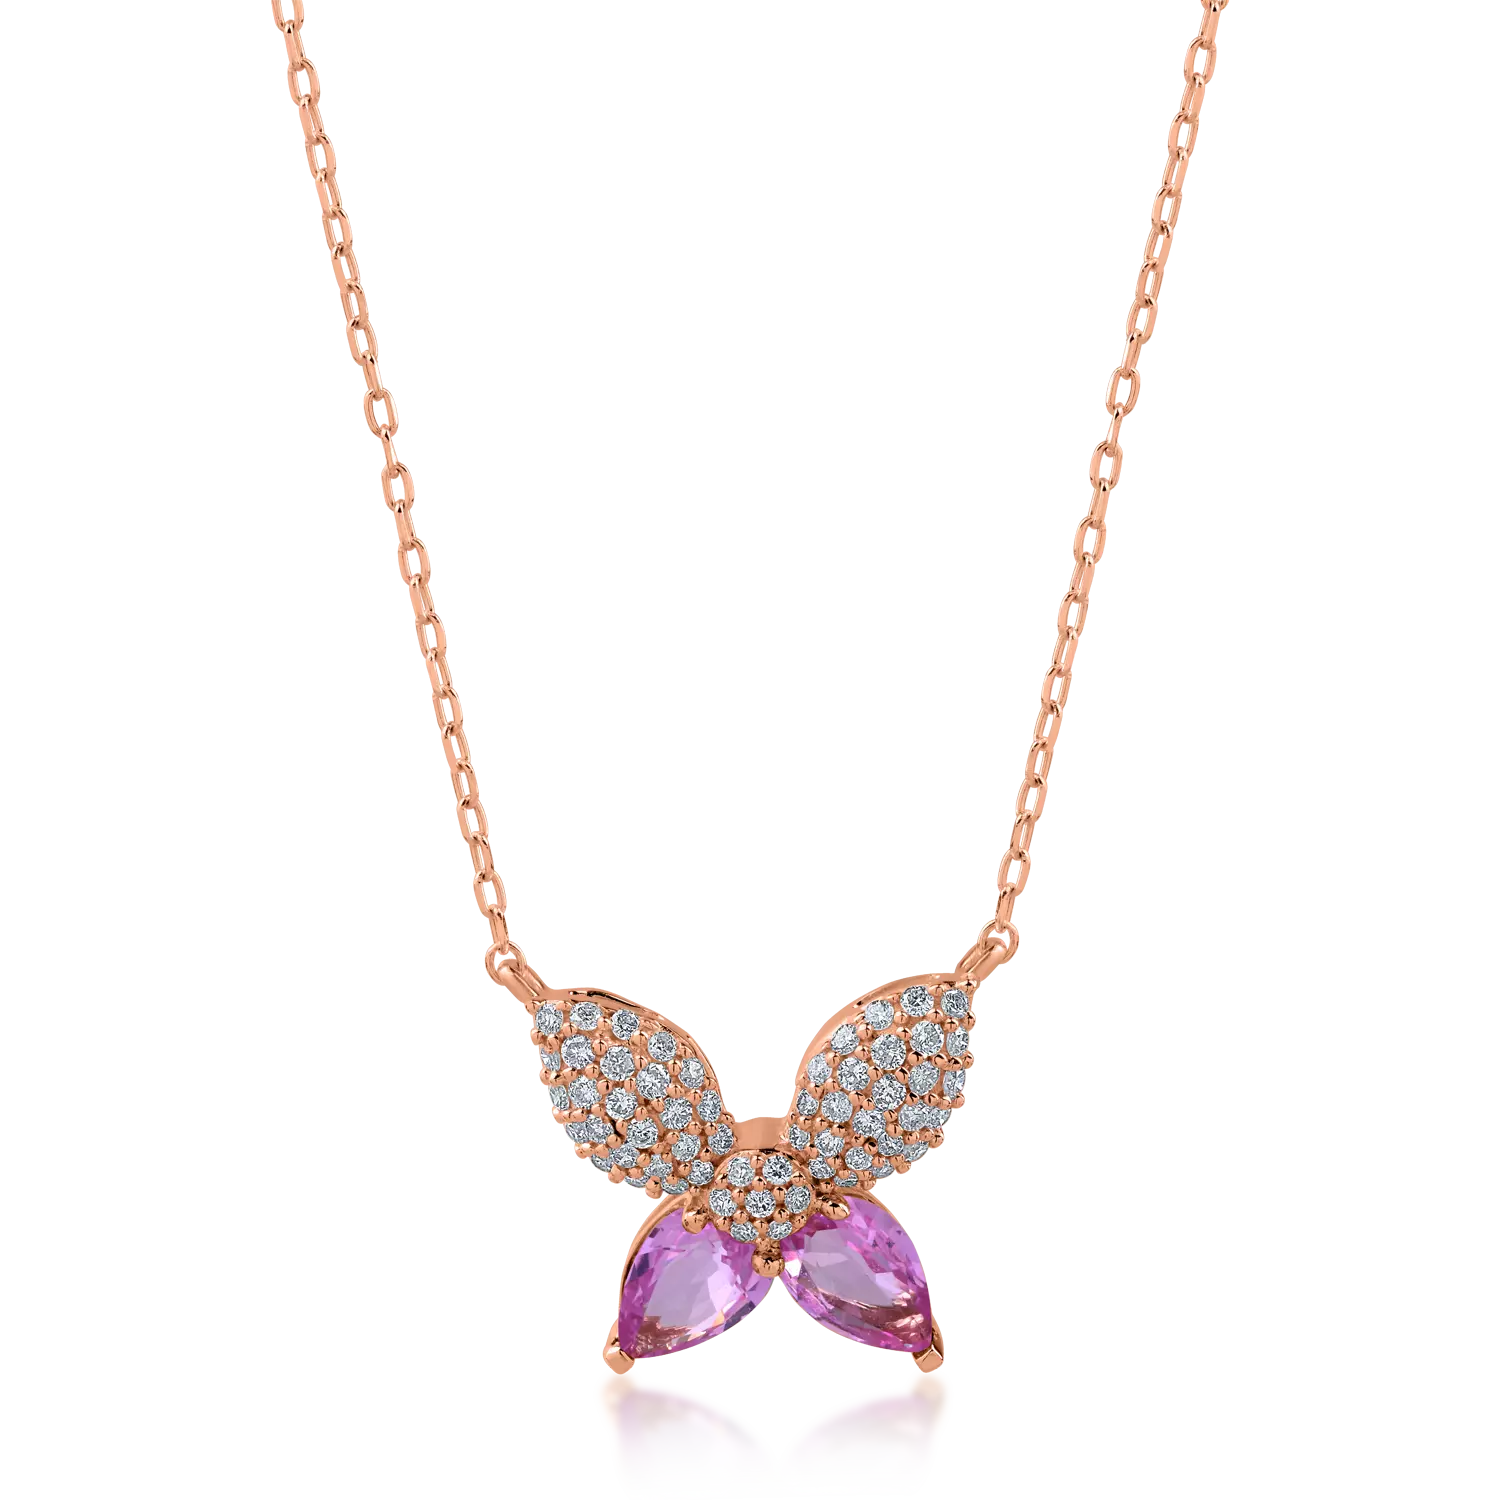 Rózsarany pillangós medál nyaklánc 0.82ct világos rózsaszín zafírral és 0.27ct gyémántokkal